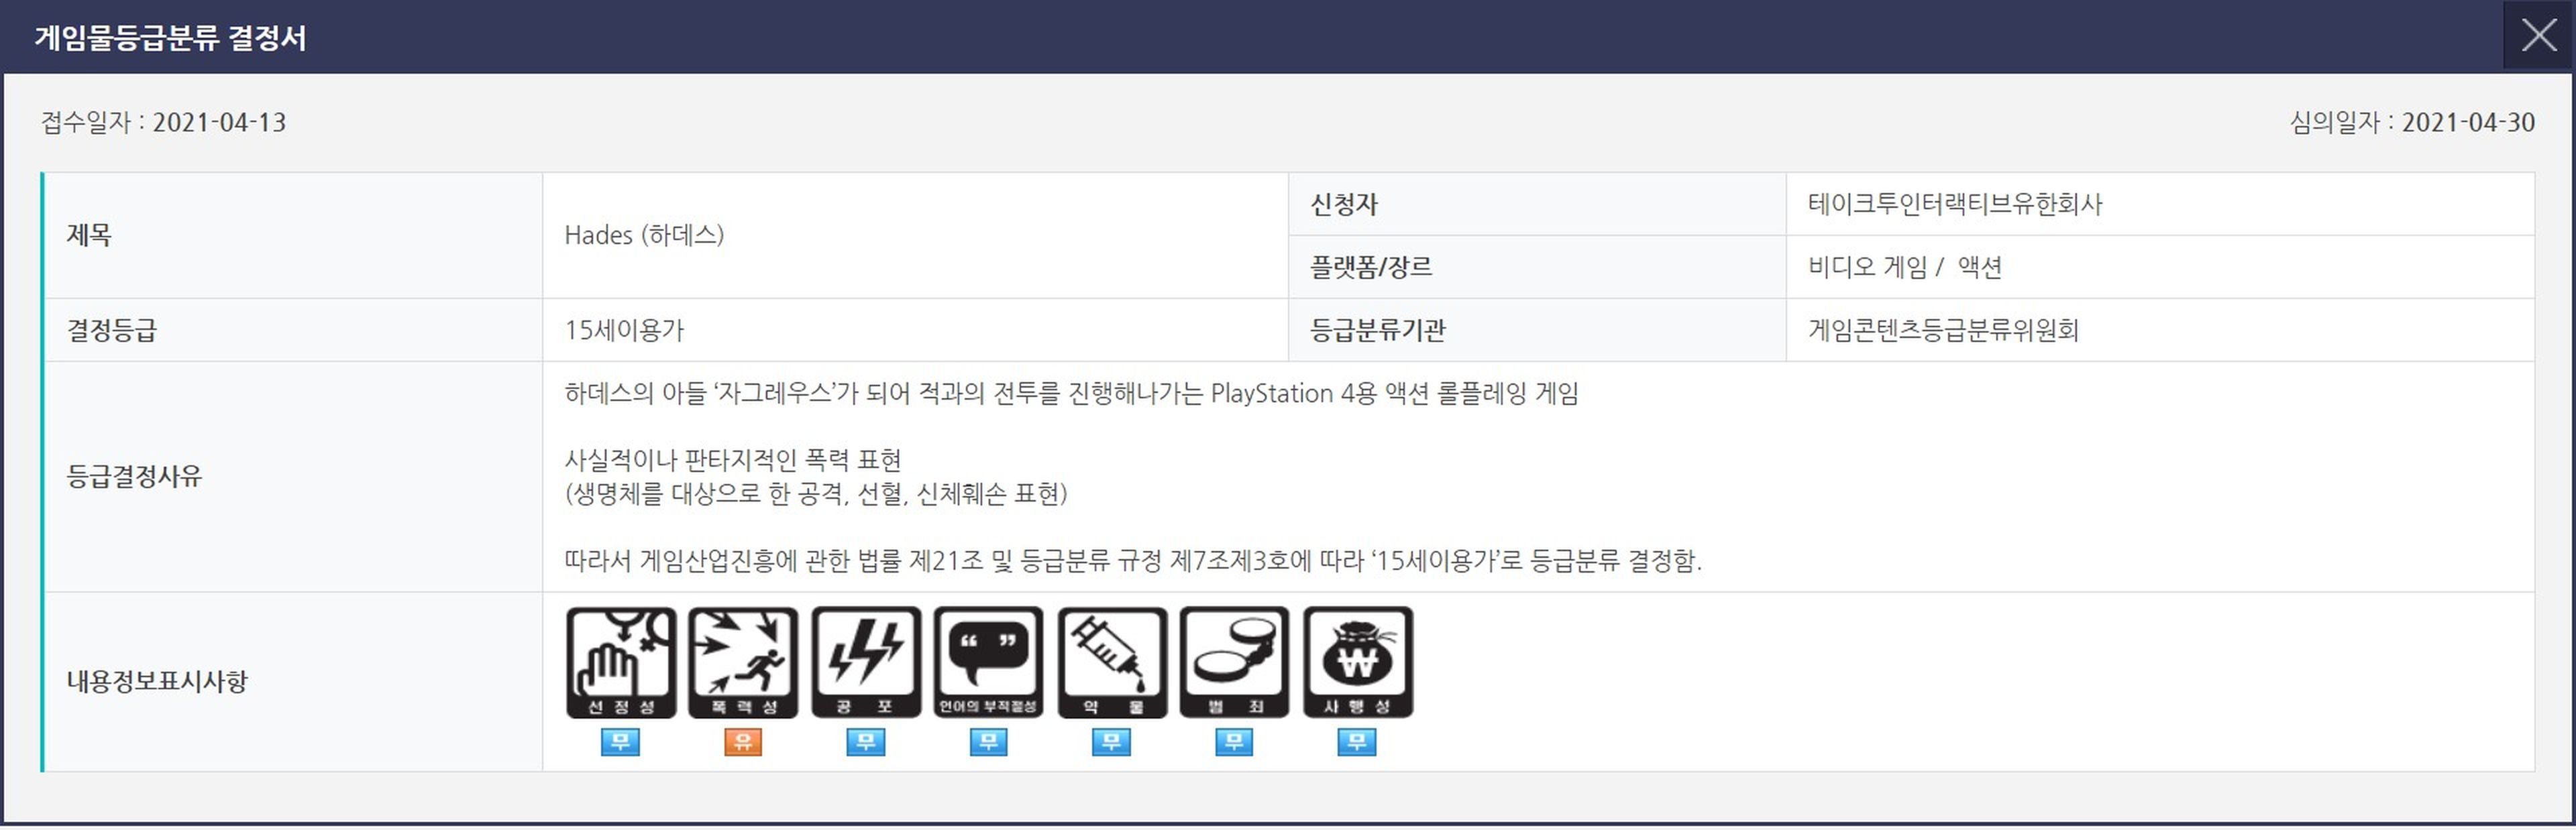 Hades para PS4 Clasificado en Corea